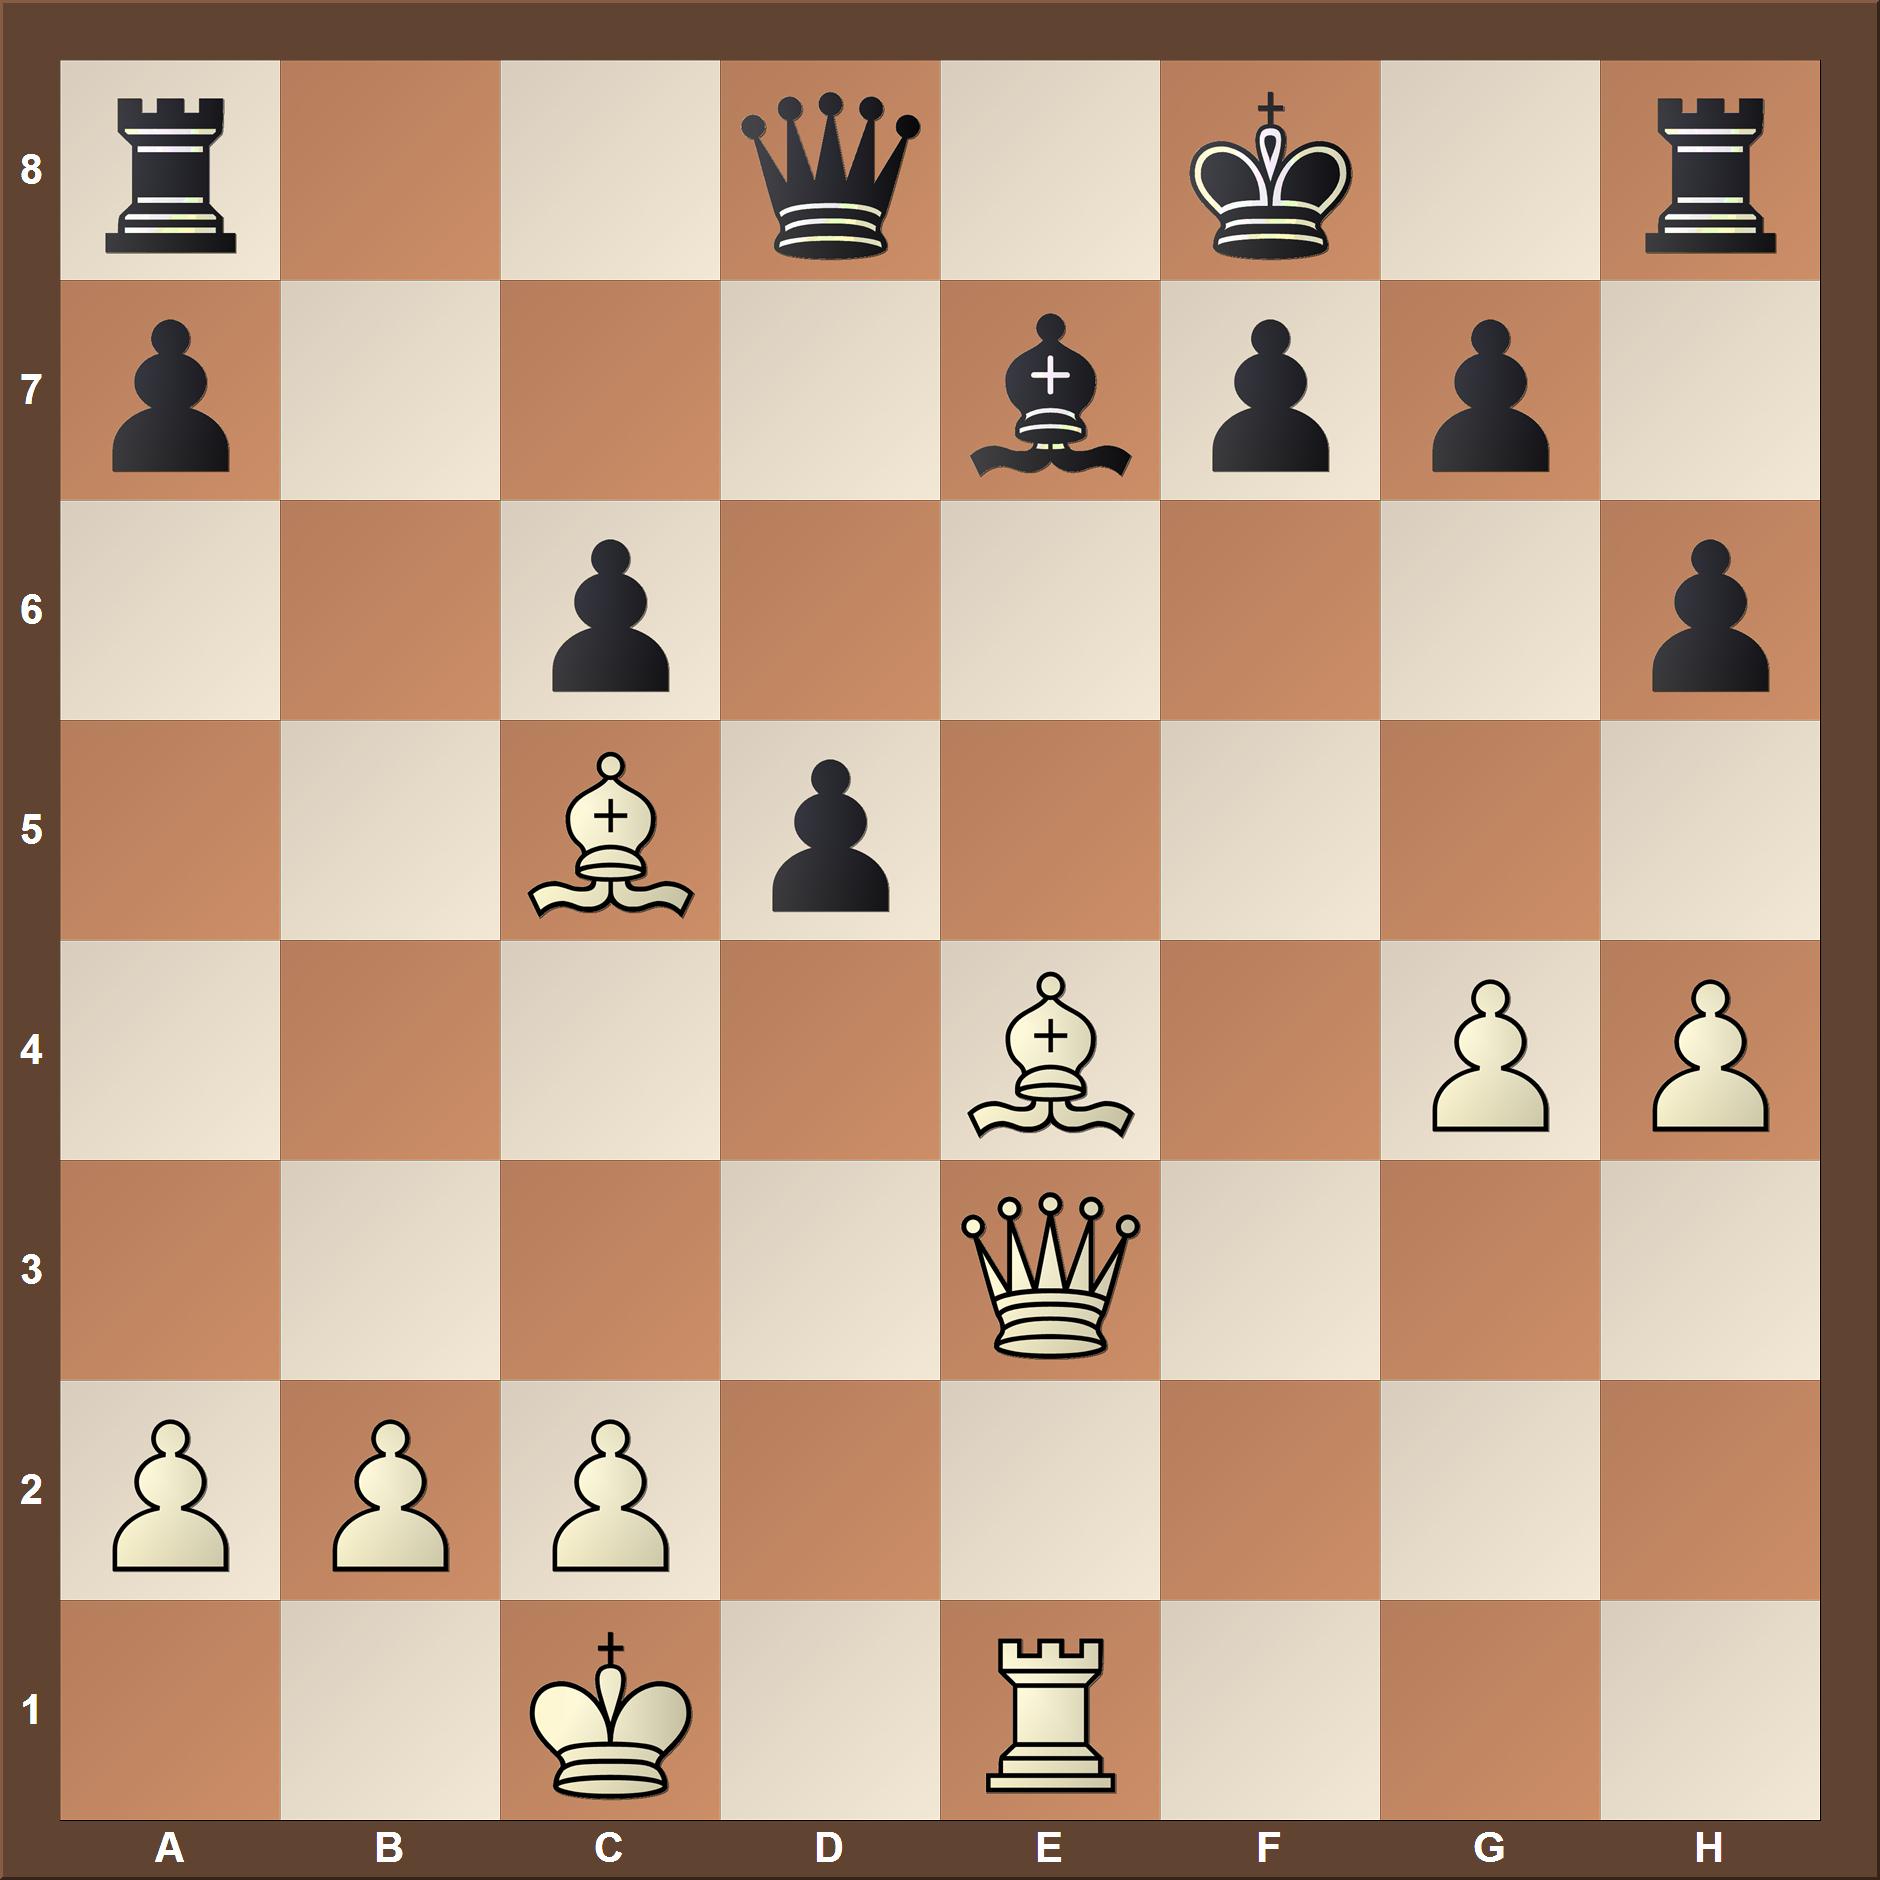 Elo 1800-2000 chess tactics